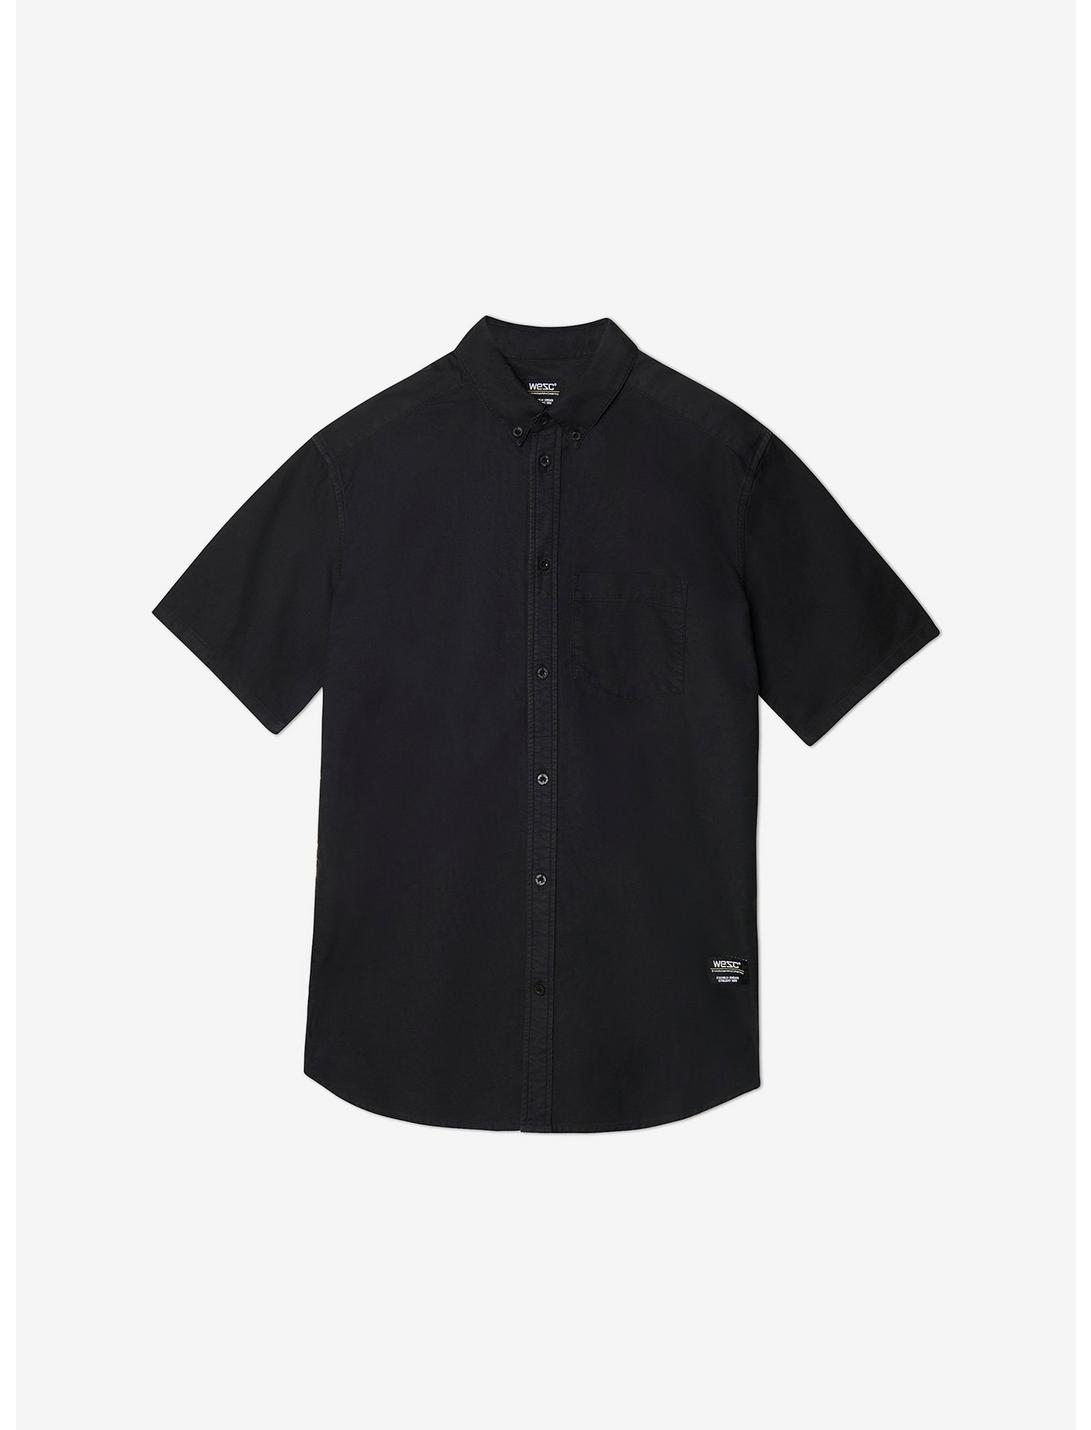 WeSC Oden Oxford Short Sleeve Button-Up Shirt Black, BLACK, hi-res